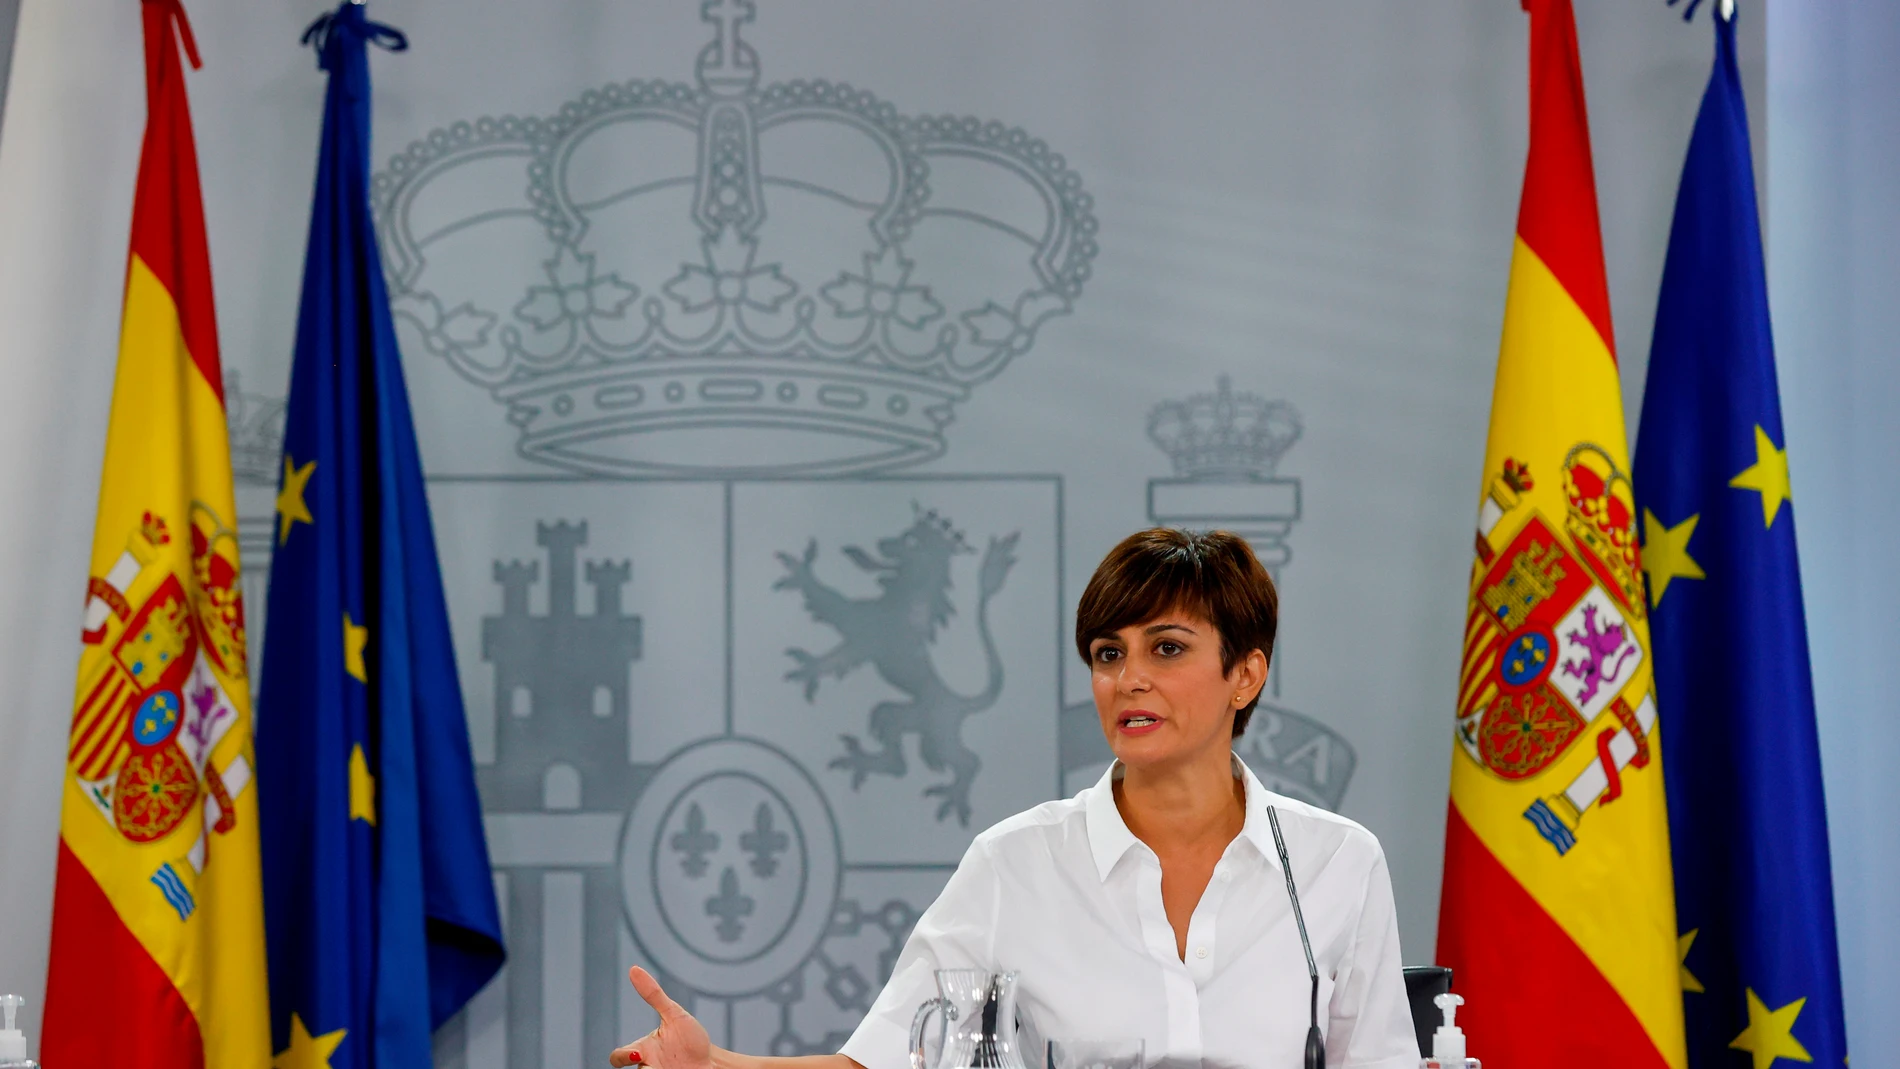 El Gobierno defiende los acuerdos con Cataluña por el "interés general": "No nos hemos vendido"